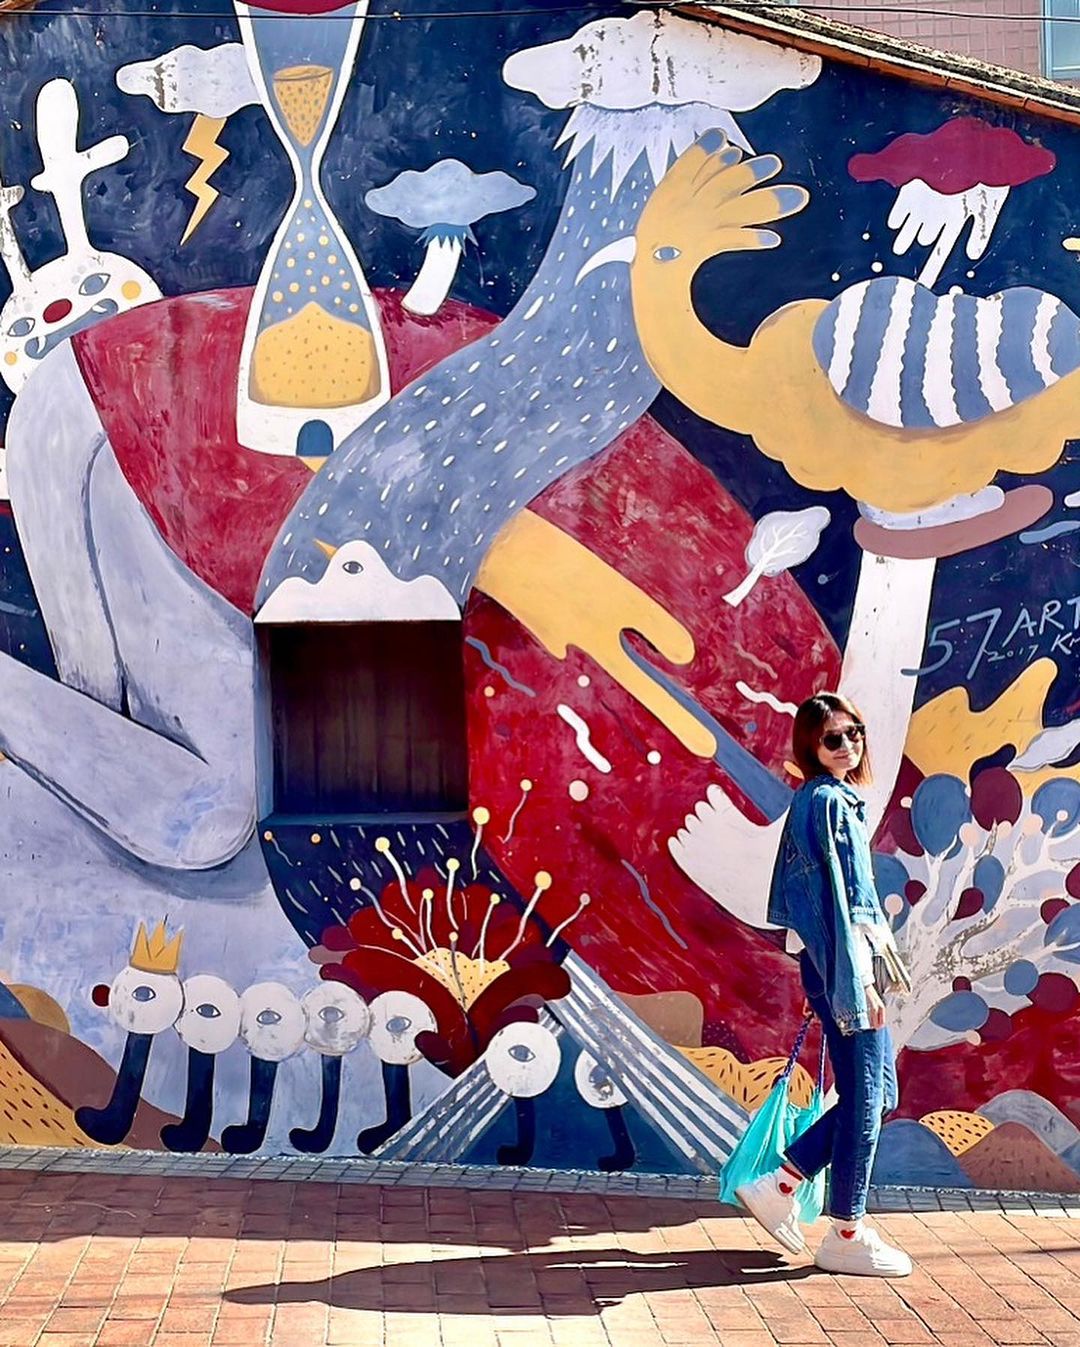 沙美老街
藏身在老街巷內的彩繪牆，將金門特色融入現代風格作品之中，成為旅途中的小驚喜。

來參加免費導覽，認識沙美老街！
沙美老街...